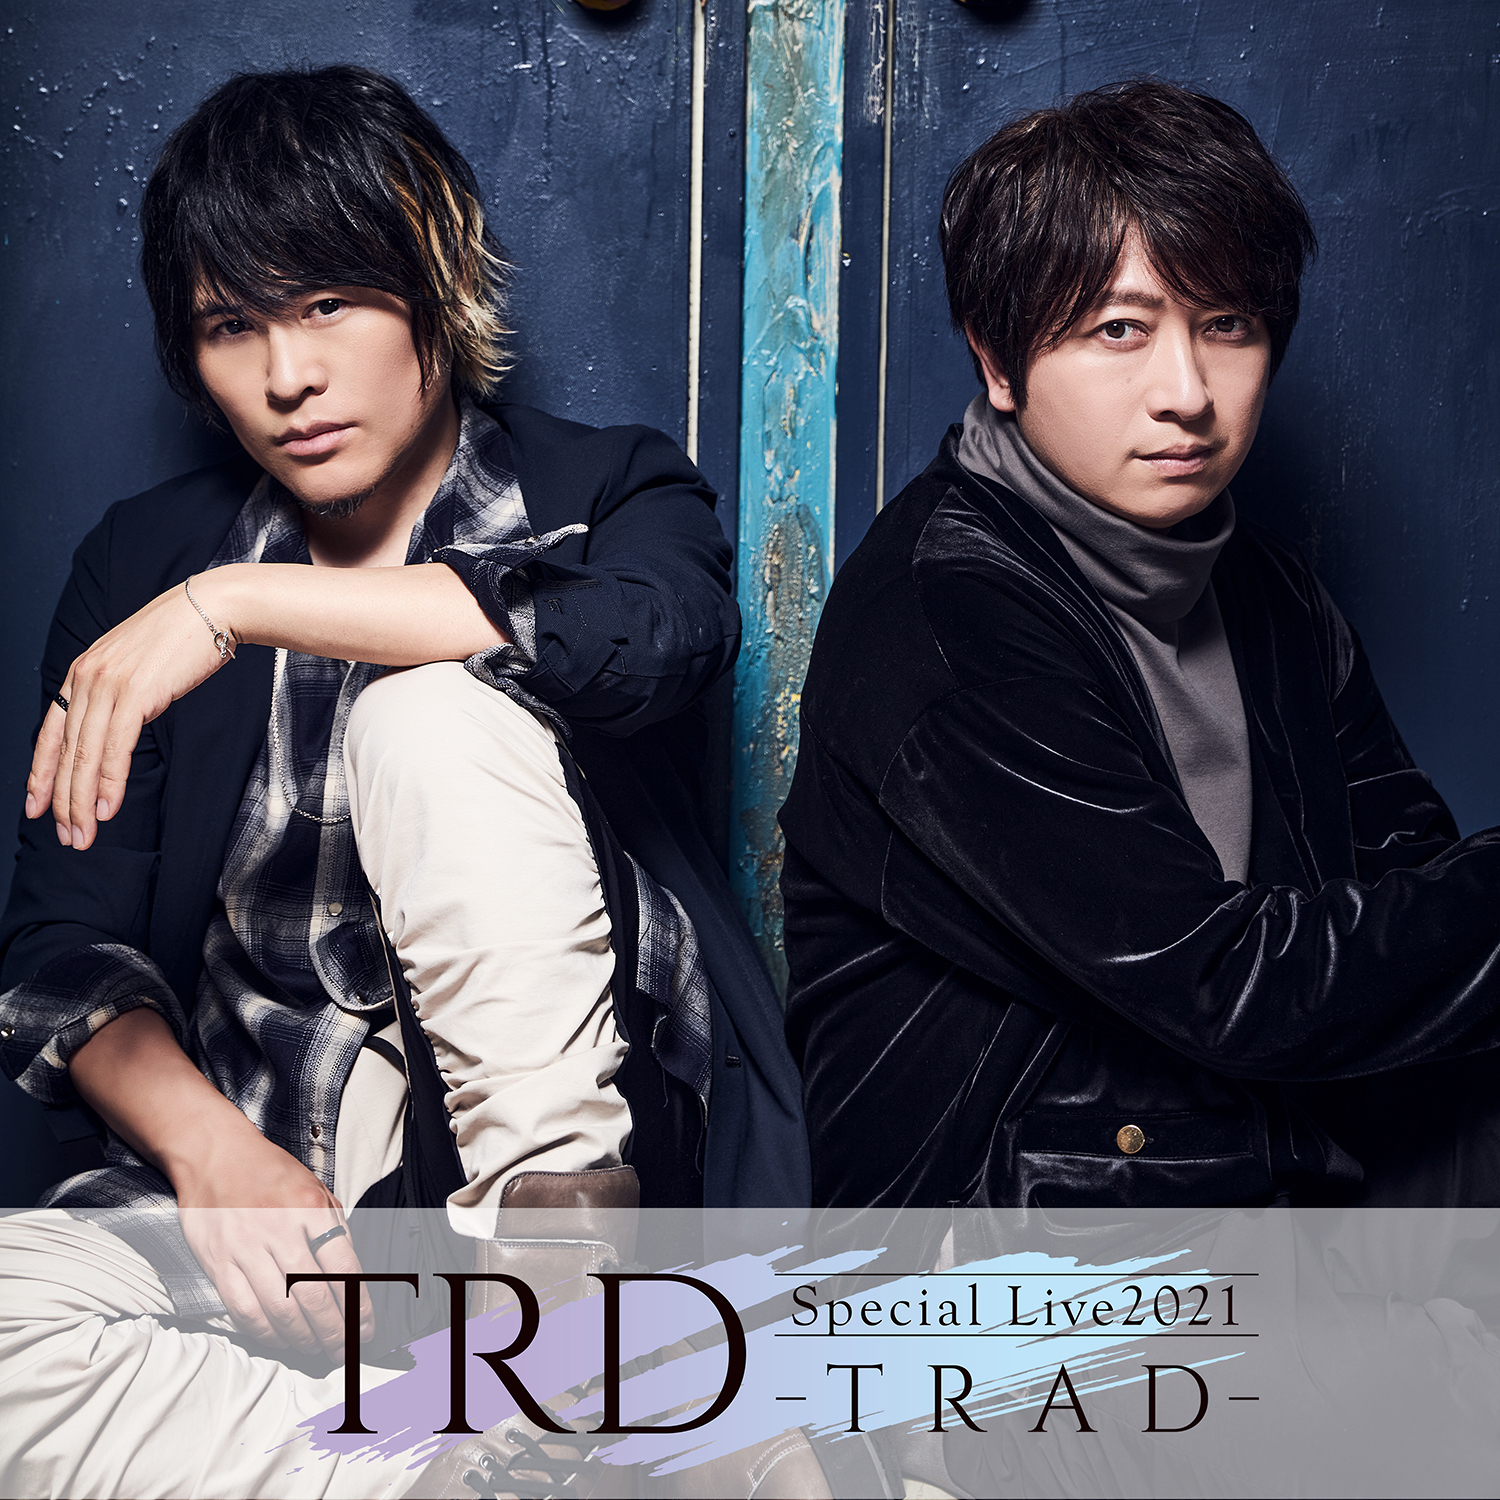 『TRD Special Live2021 -TRAD-』